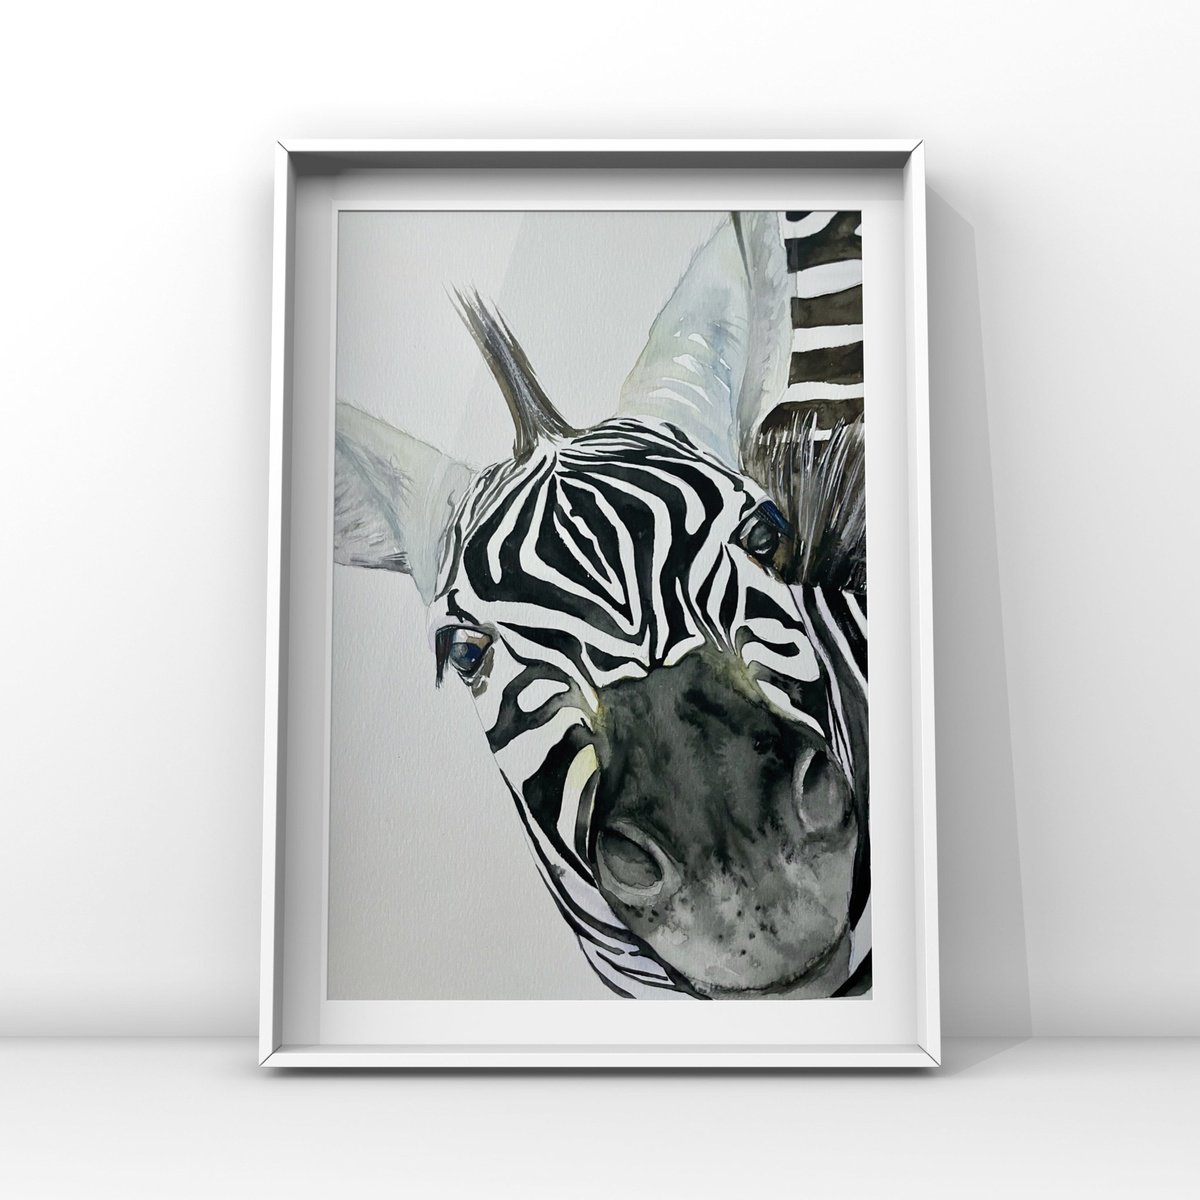 Zebra’s nose by Lucia Kasardova